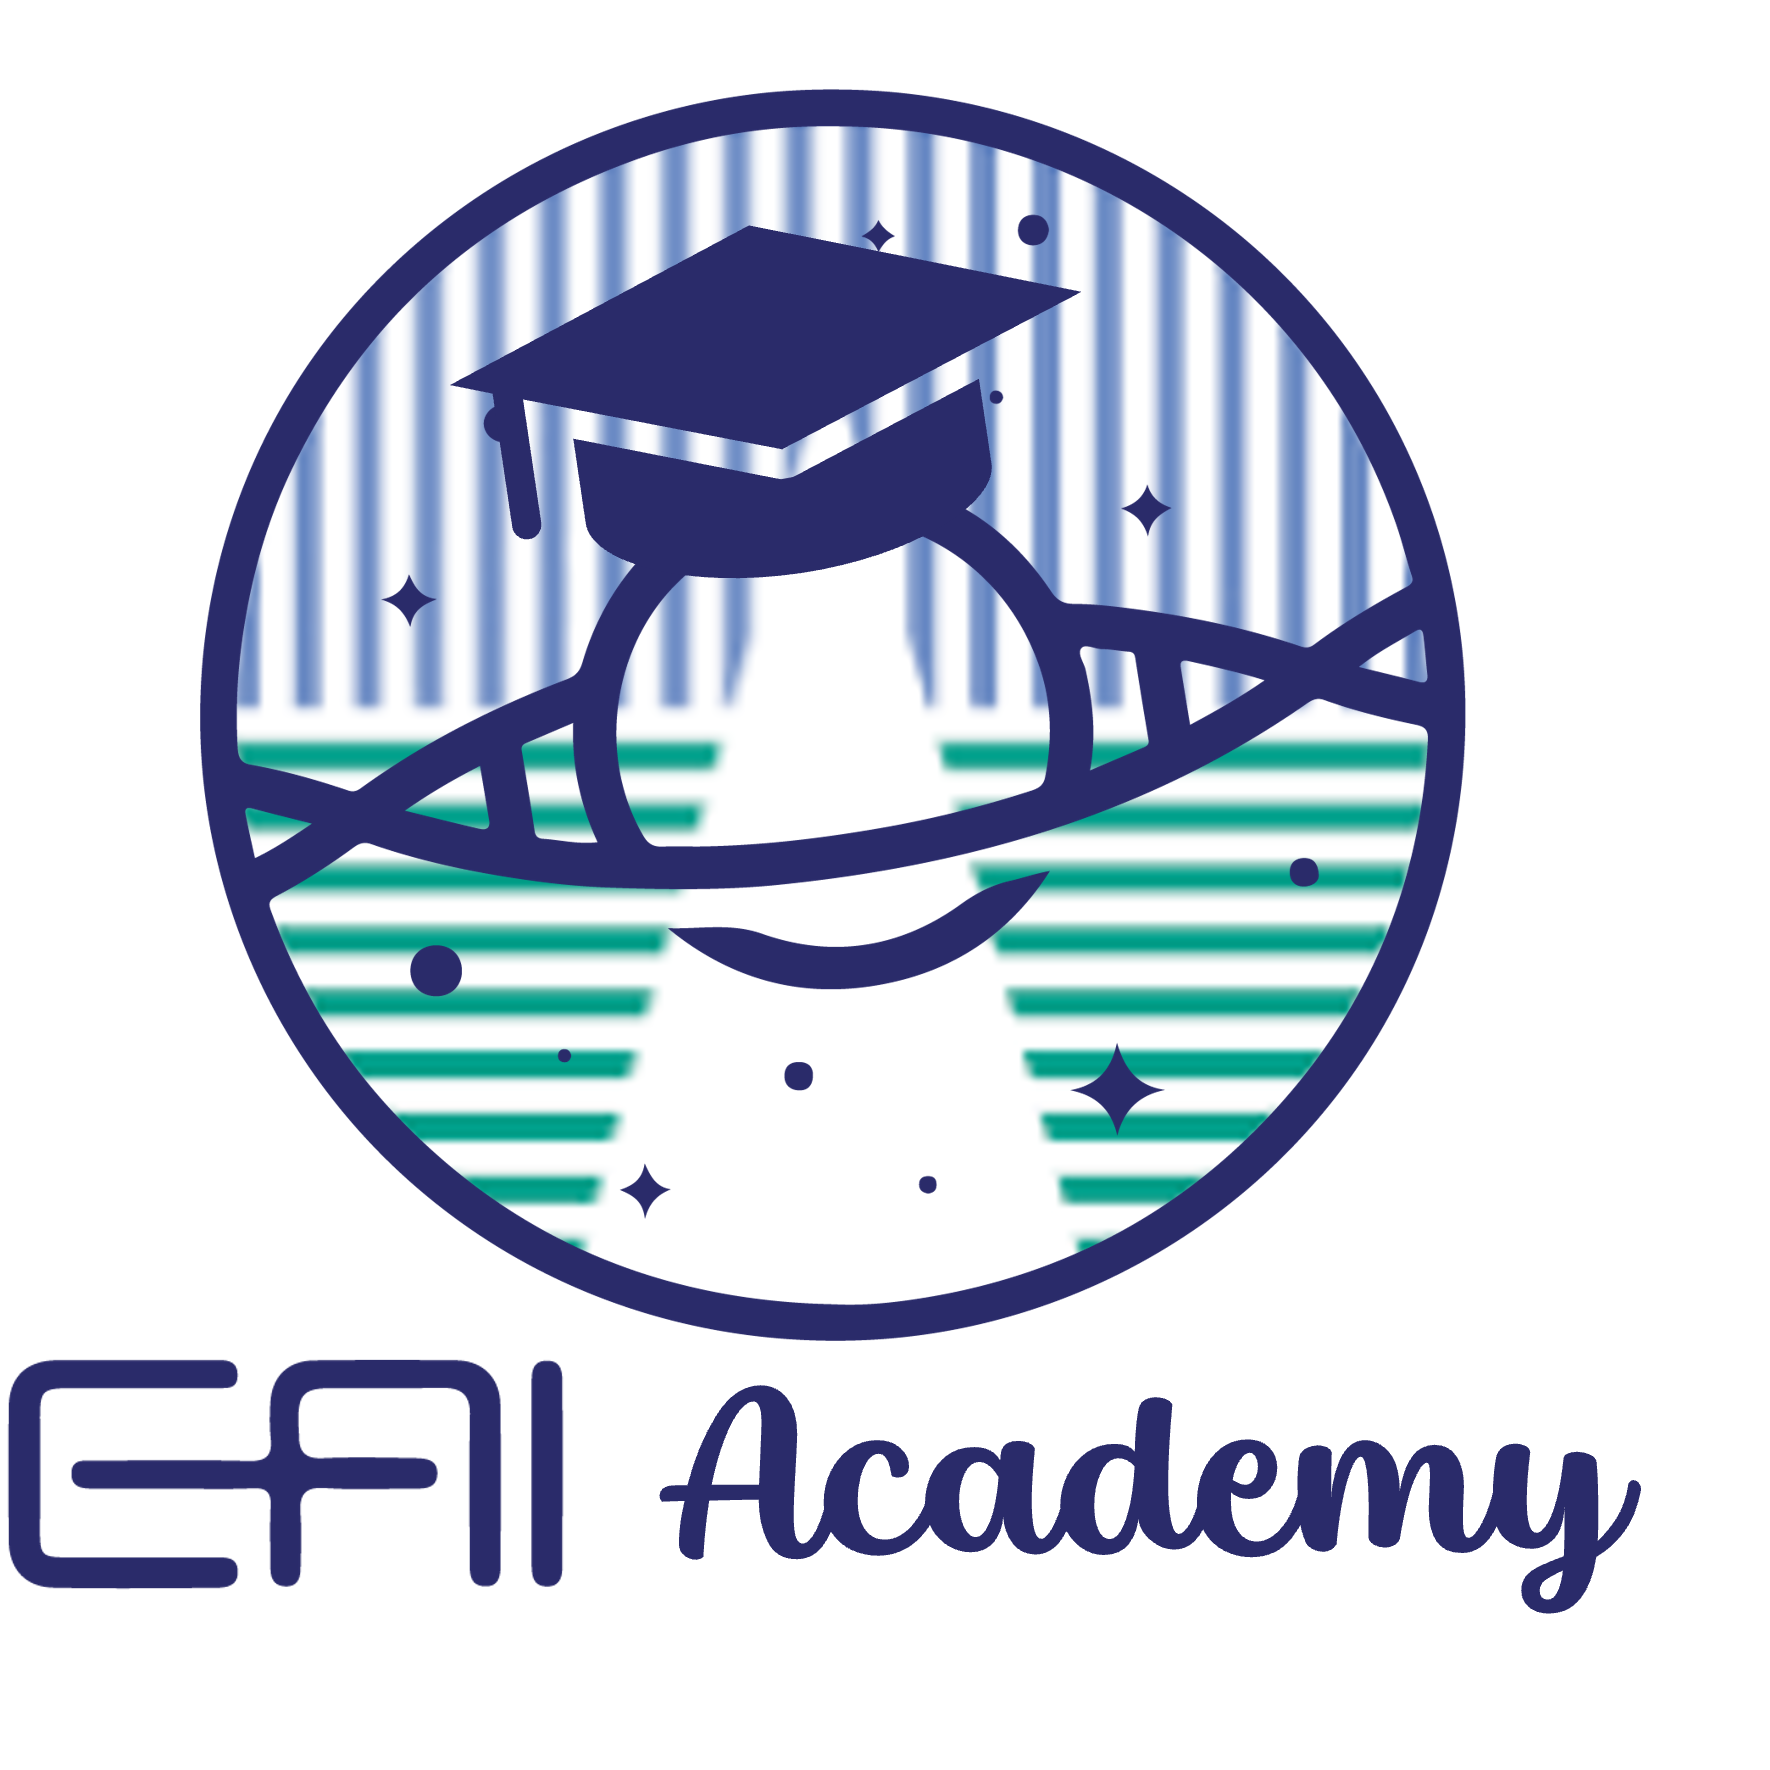 EAI Academy with title